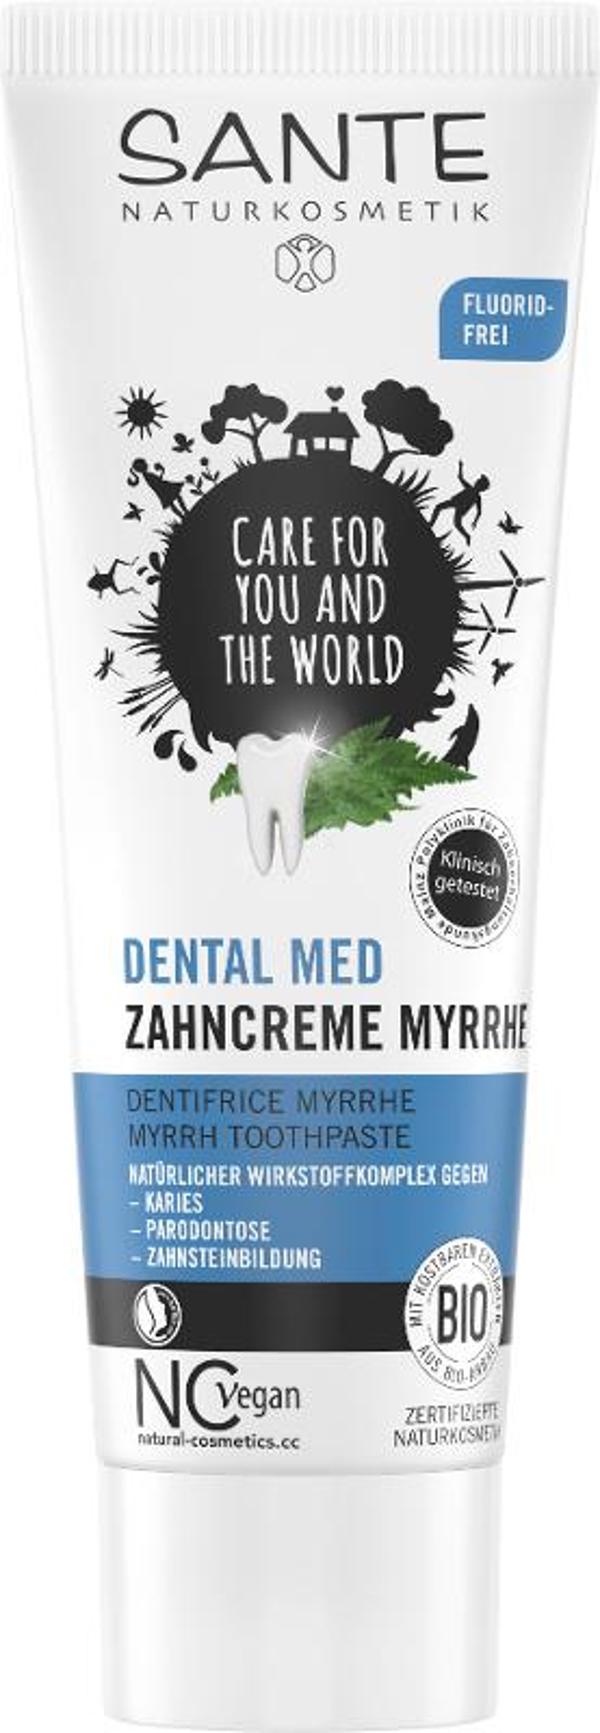 Produktfoto zu DENTAL MED Zahncreme Myrrhe 75ml